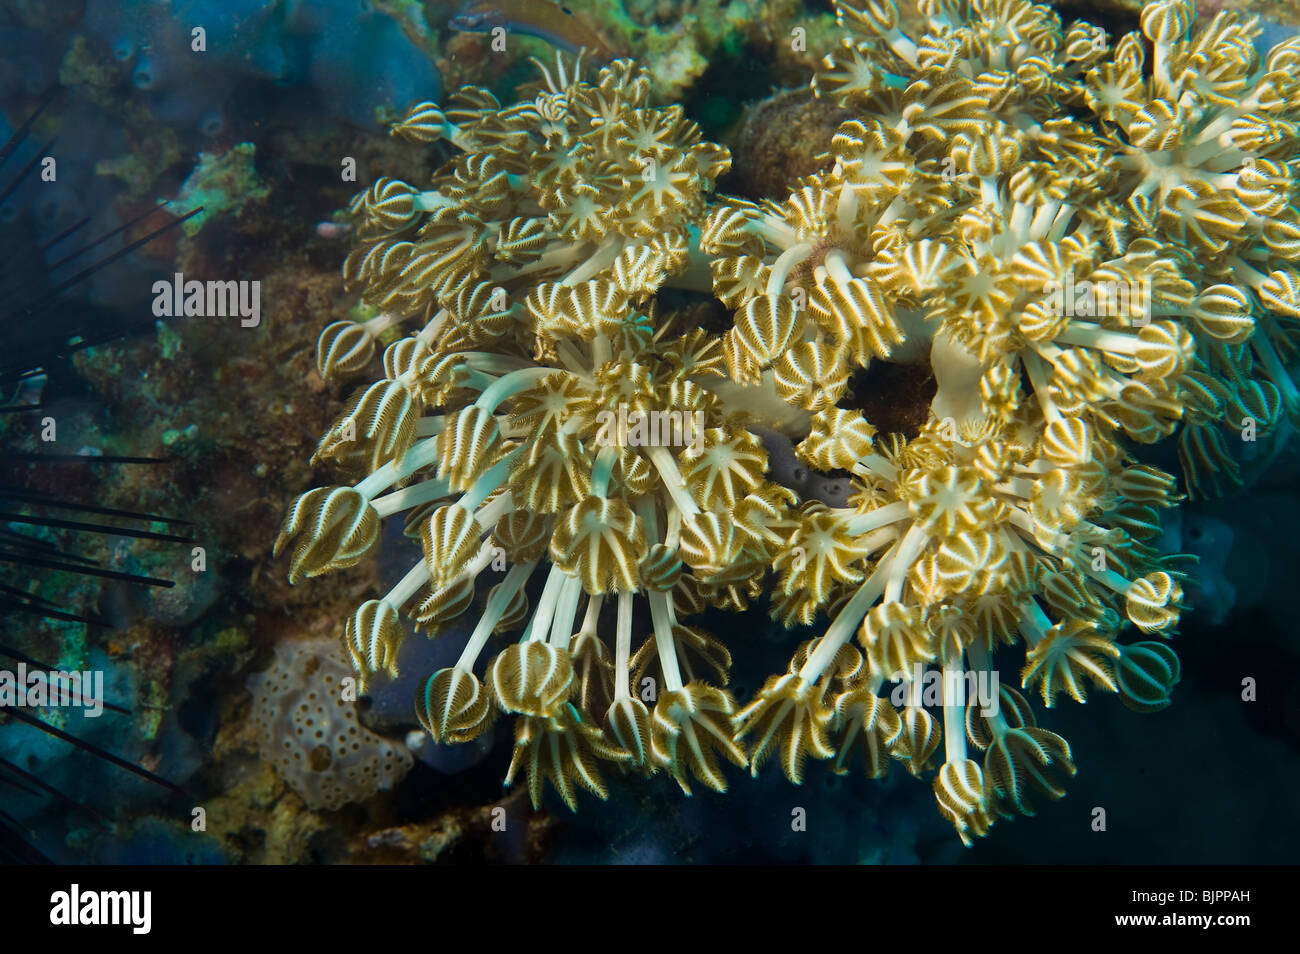 Soft Coral polipi Goniopora tentacoli di polipi di alimentazione alimentazione REEF Malapascua vita sulla barriera corallina mare sotto acqua immersione subacquea diver div Foto Stock